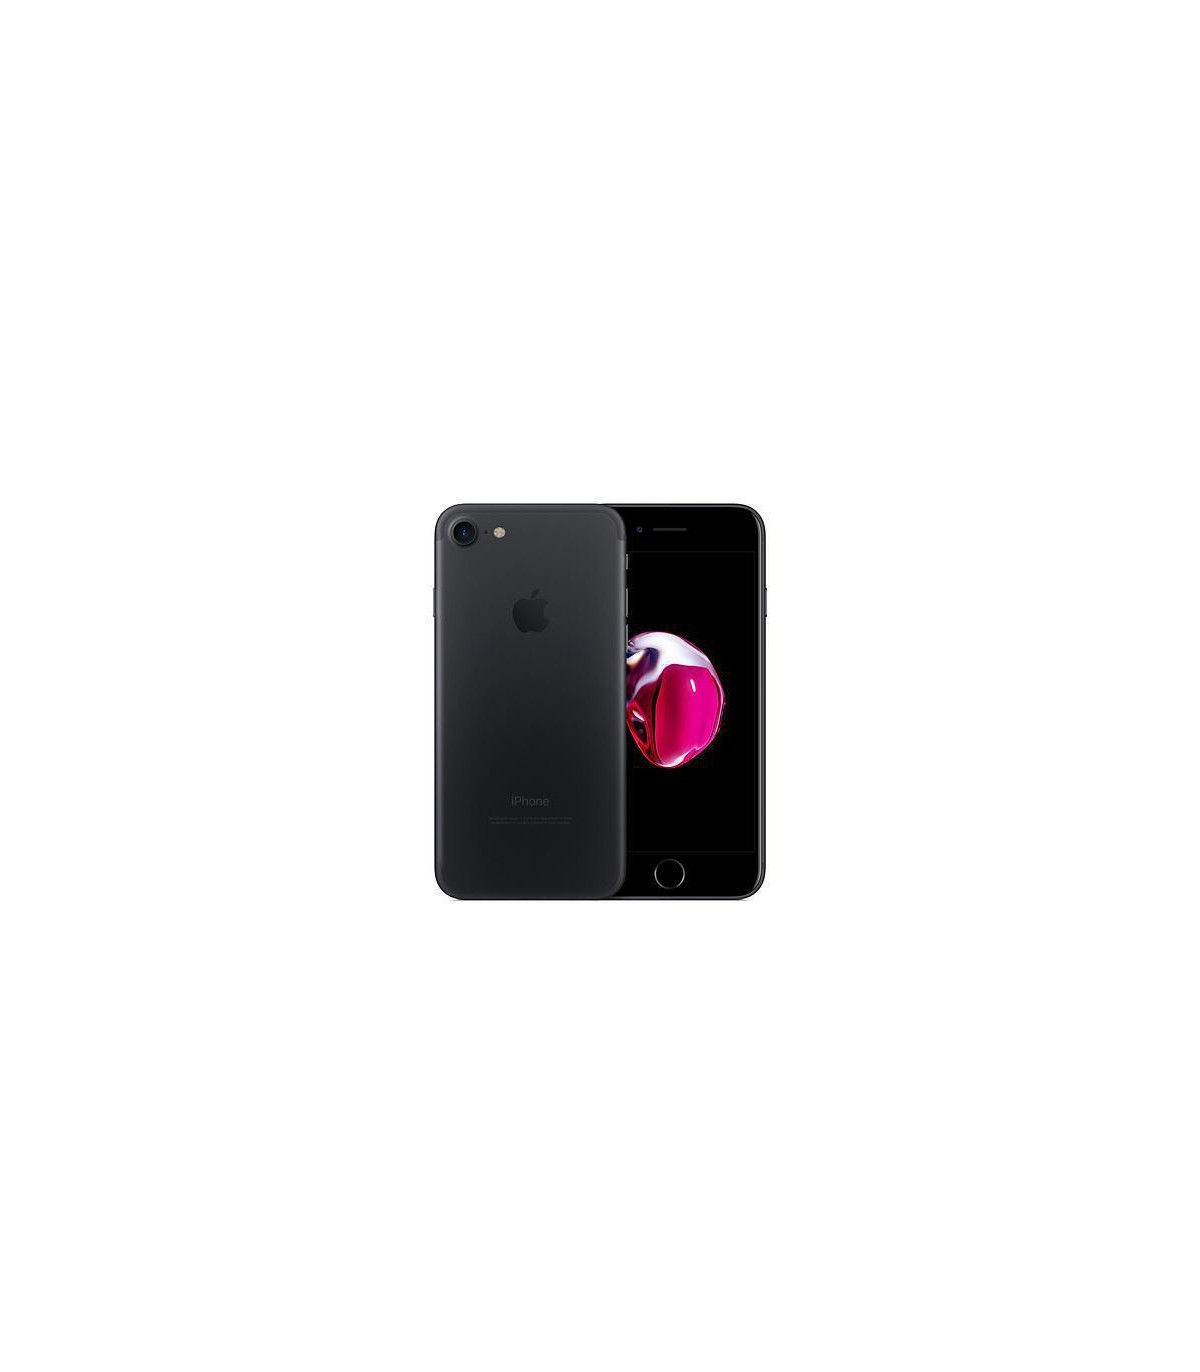 Apple iPhone 7 128 Go - Noir - Débloqué - Occasion reconditionné 